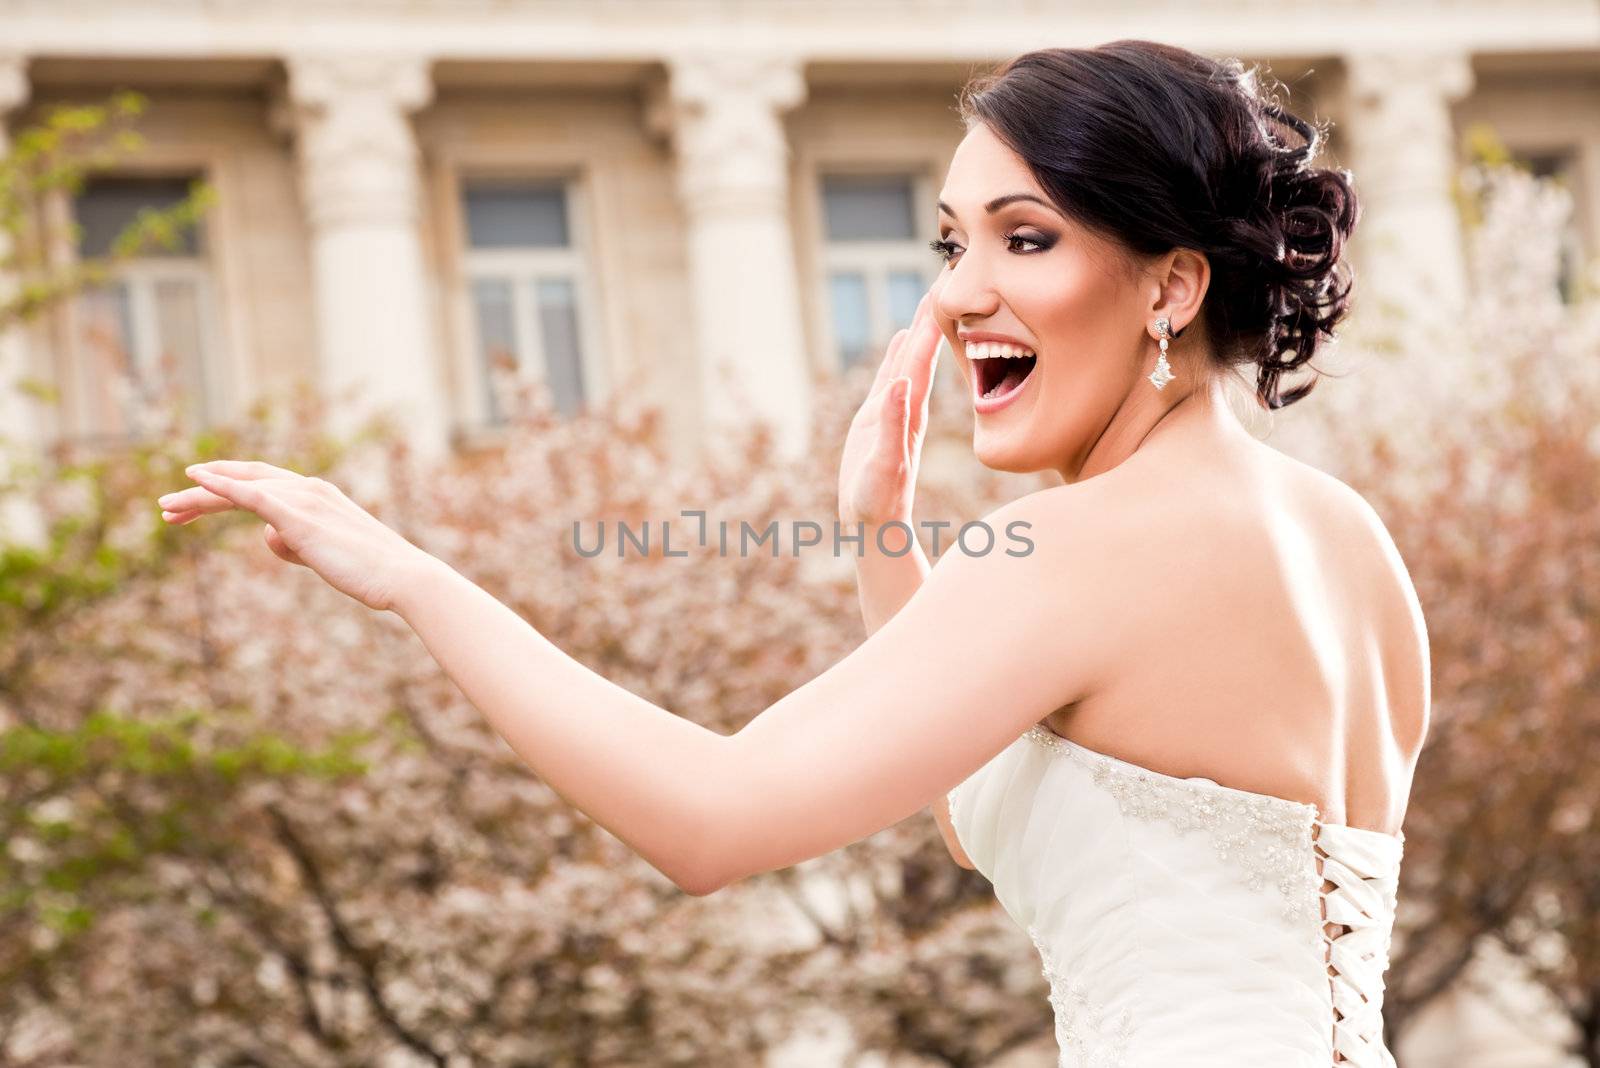 Happy beautiful bride dancing in wedding dress outside